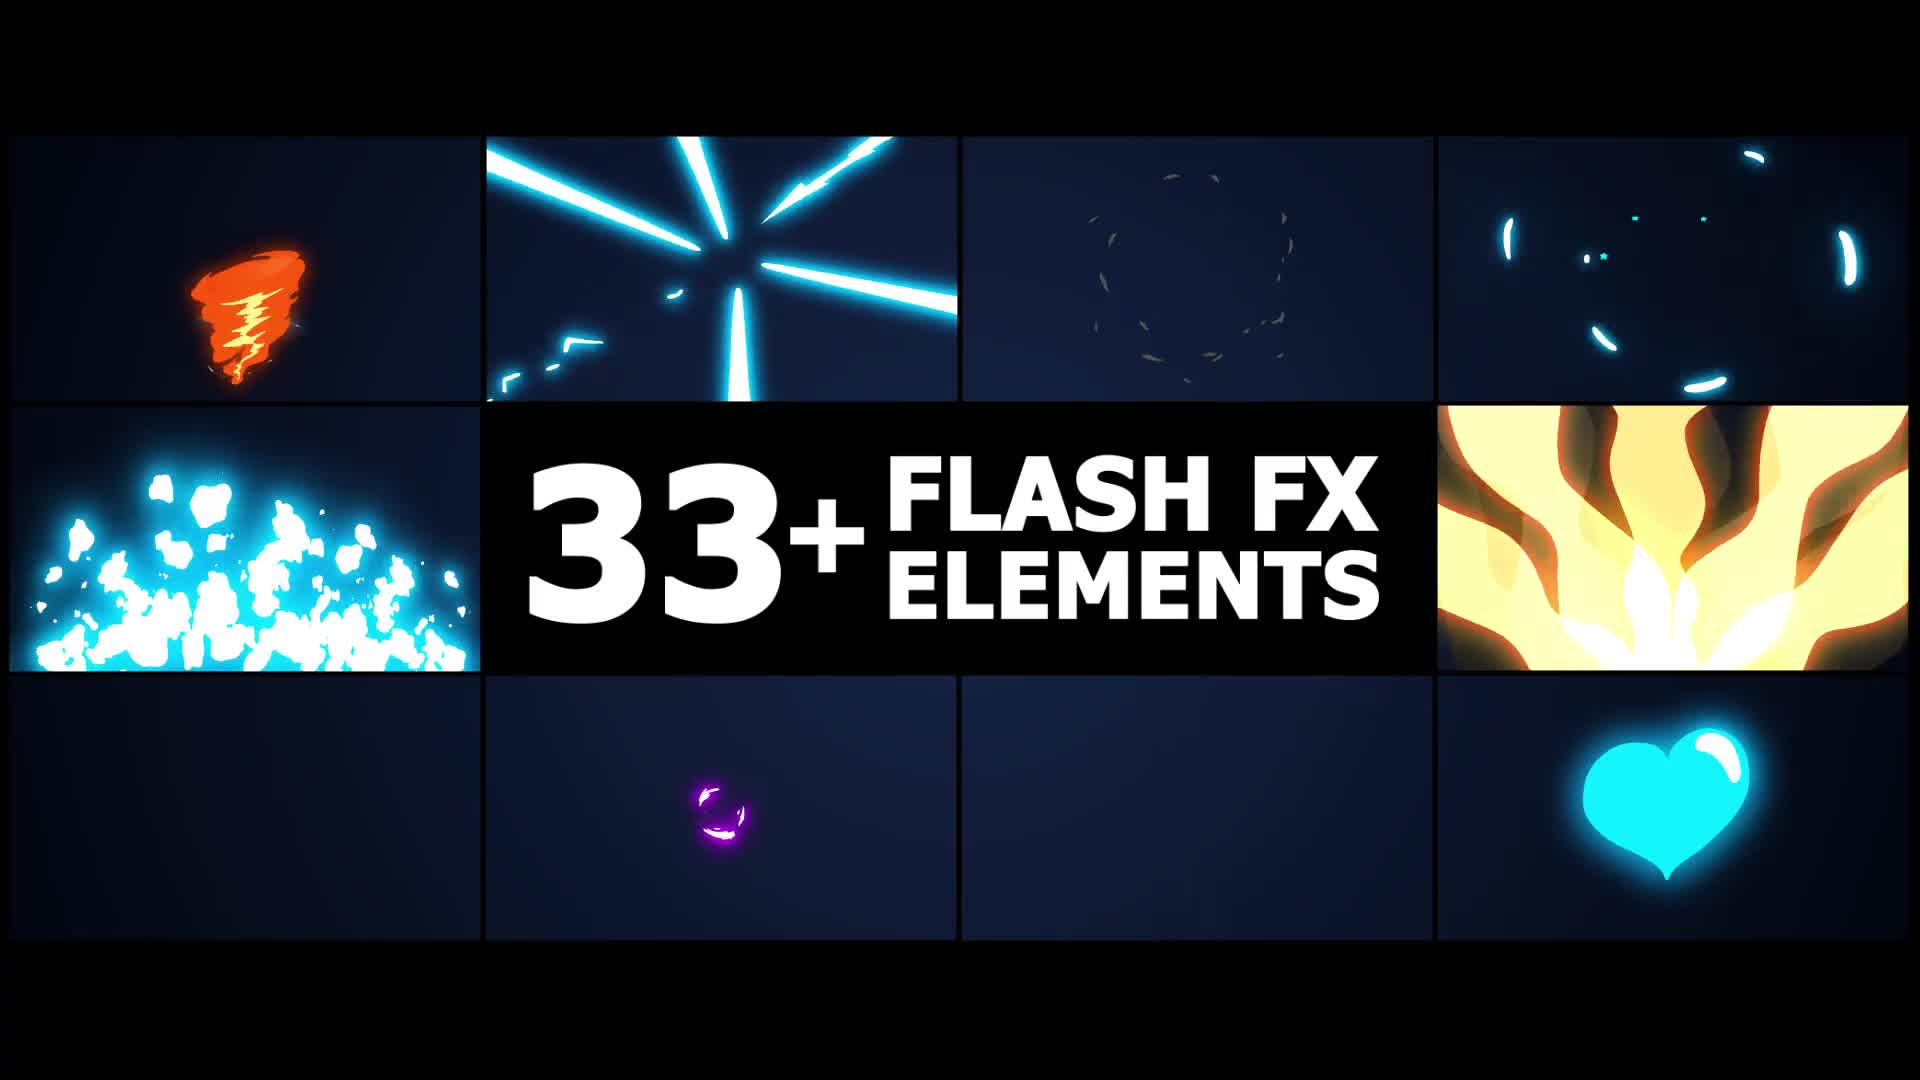 Flash FX Elements | Premiere Pro MOGRT Videohive 38972128 Premiere Pro Image 1